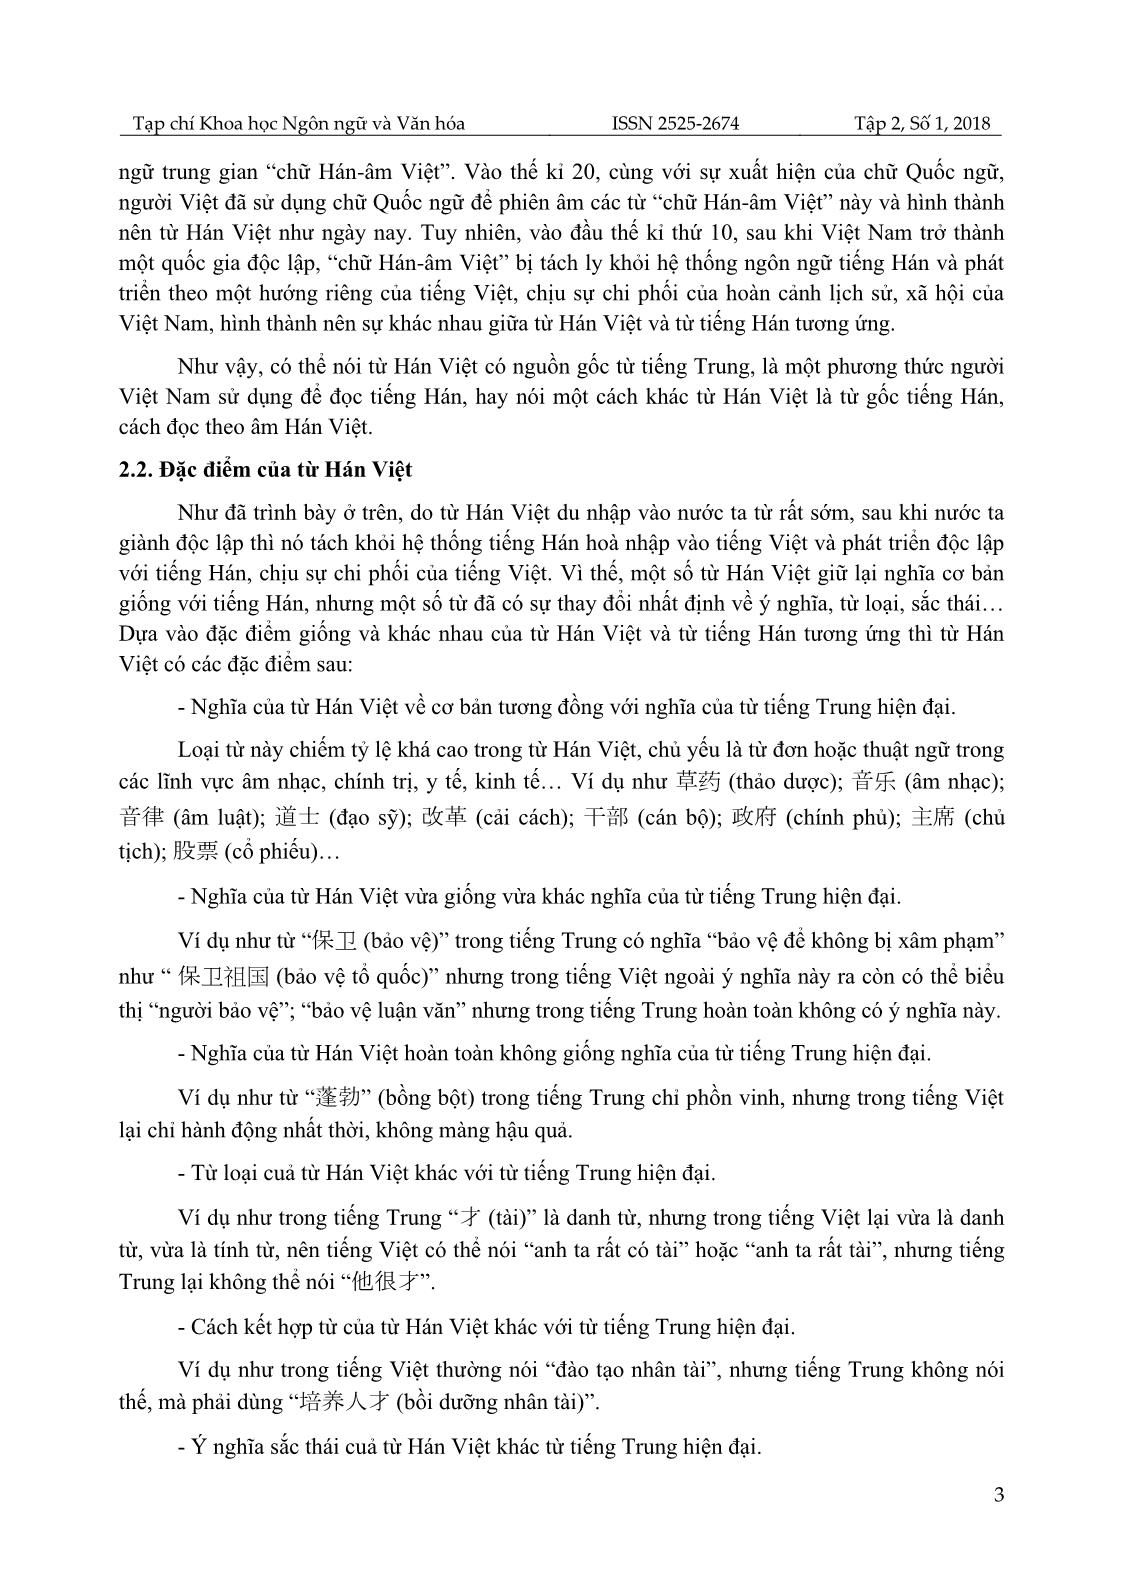 Khảo sát lỗi sai của sinh viên khoa Ngoại ngữ, Đại học Thái Nguyên khi dịch trực tiếp từ Hán Việt sang tiếng Trung và giải pháp khắc phục trang 3